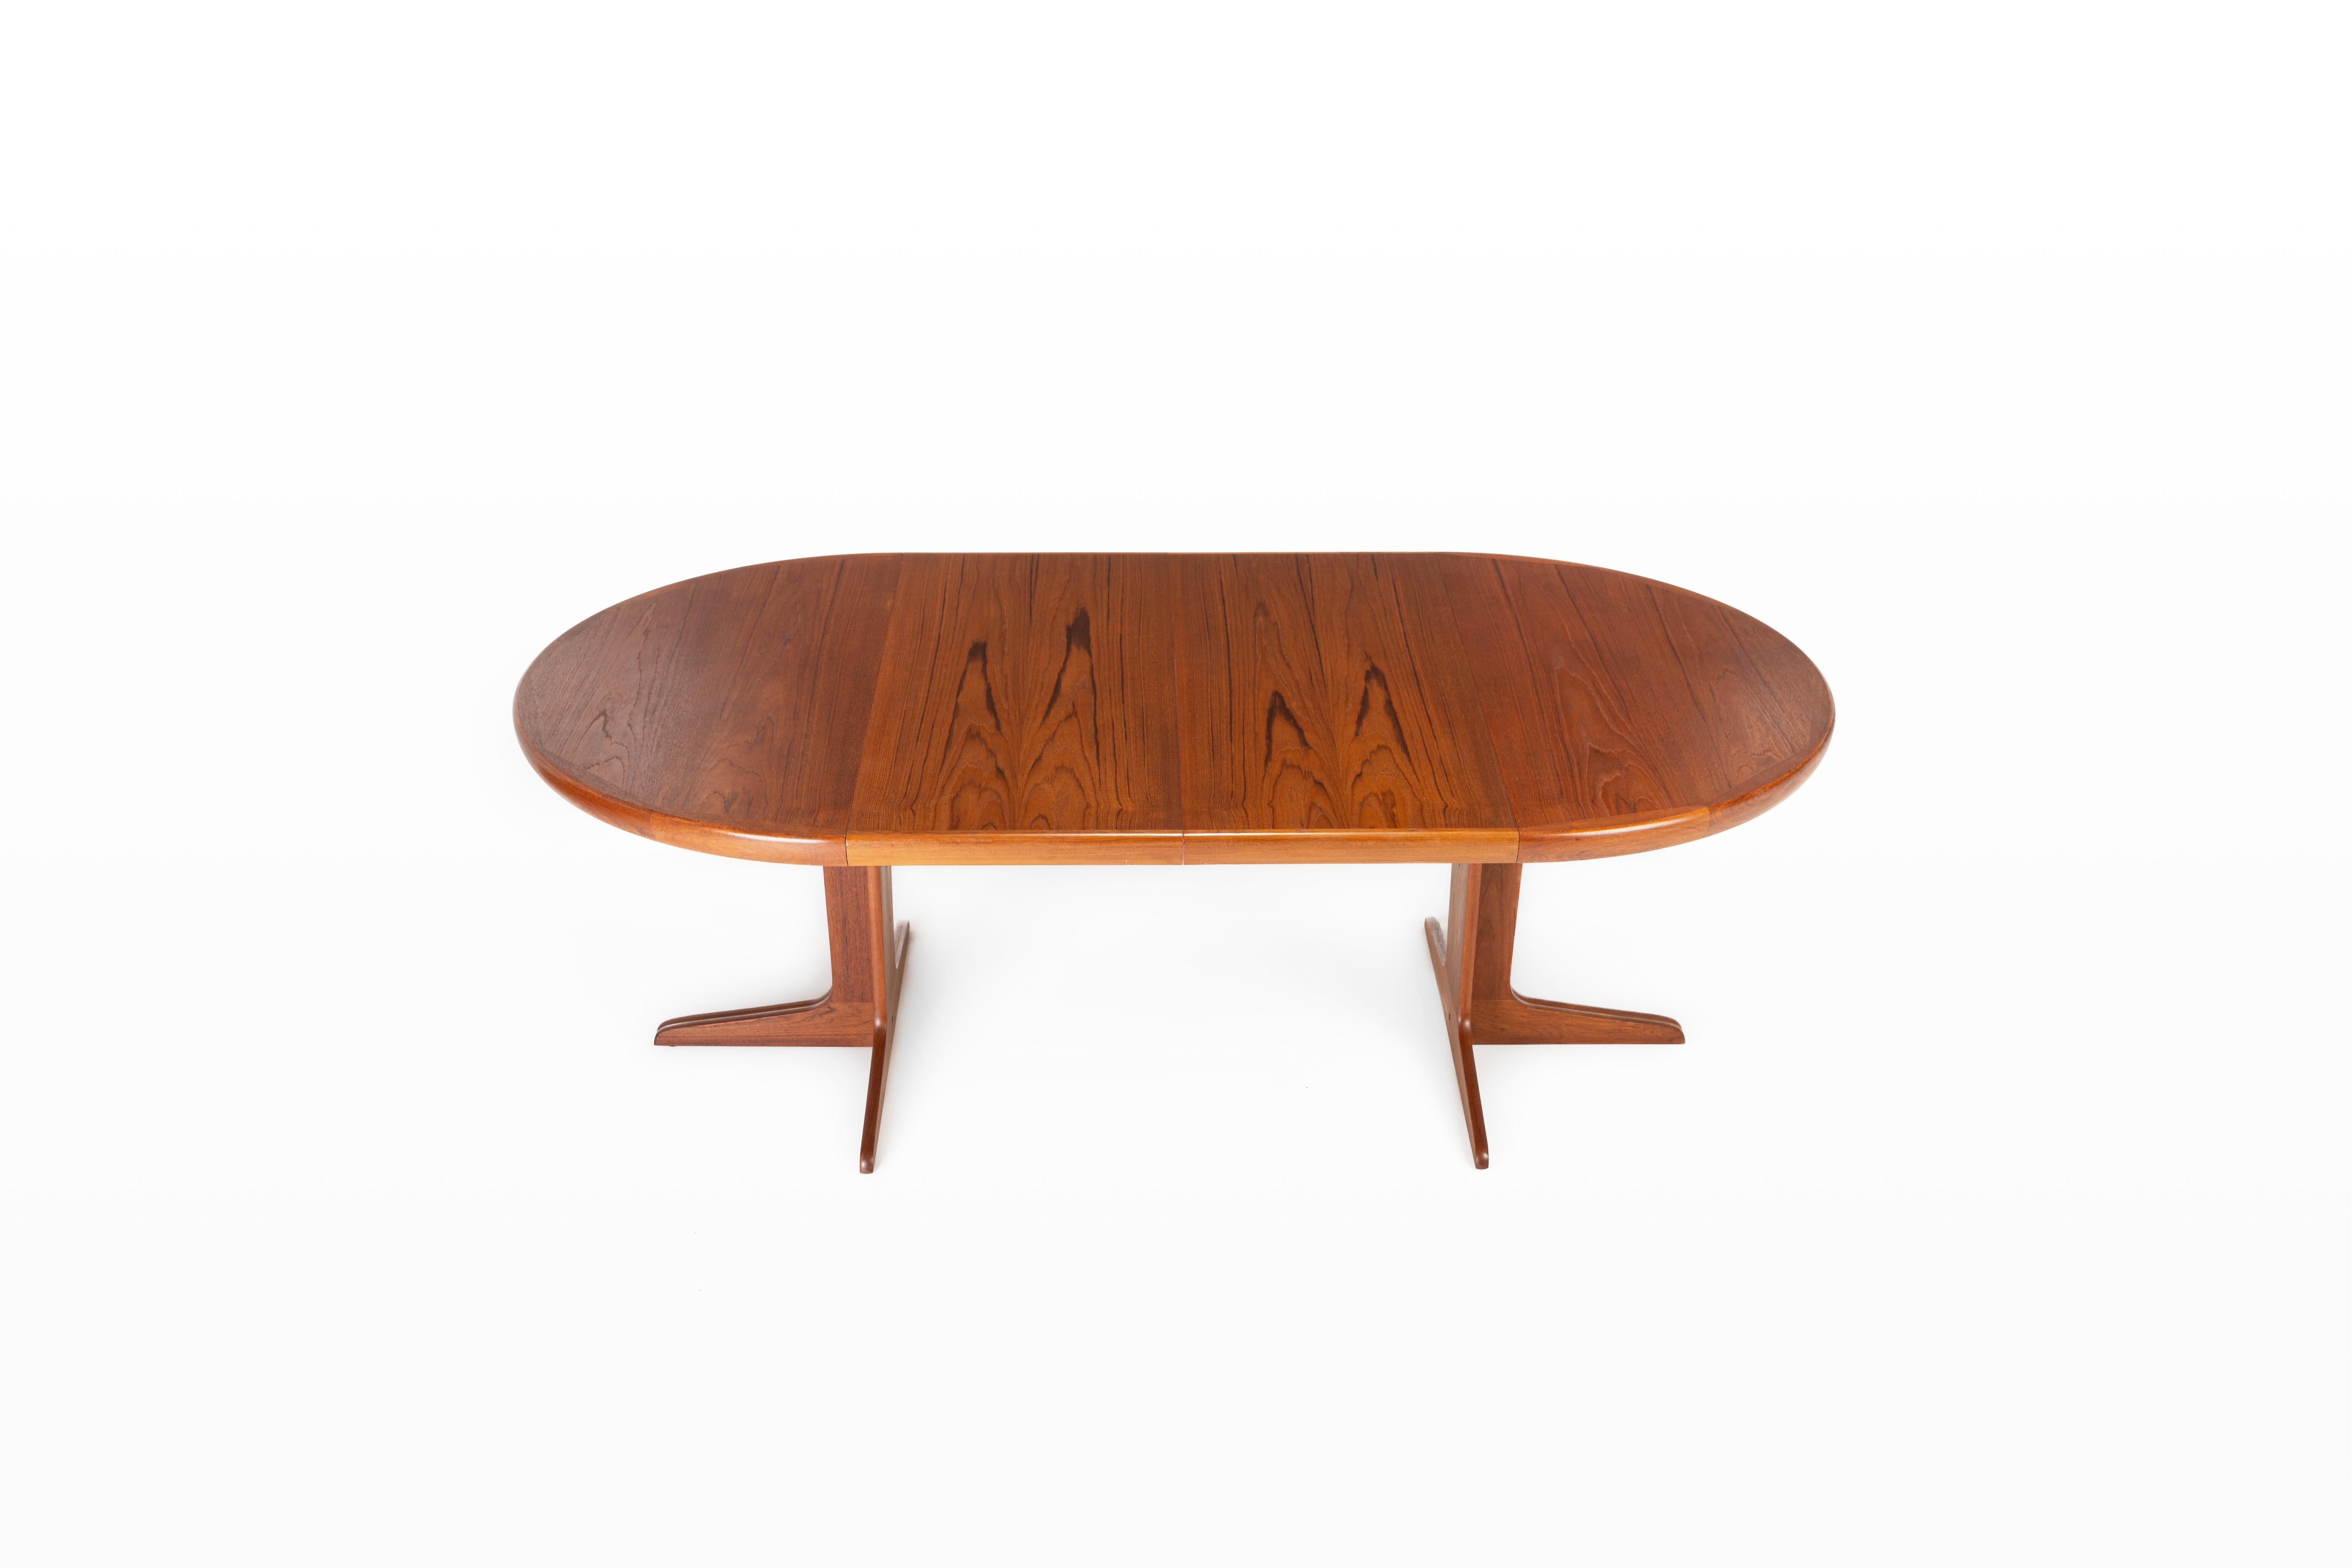 Magnifique table ronde scandinave fabriquée par VV Møbler. Cette table est extensible et a été fabriquée au Danemark dans les années 1960. La table est en bois de teck et est en très bon état.